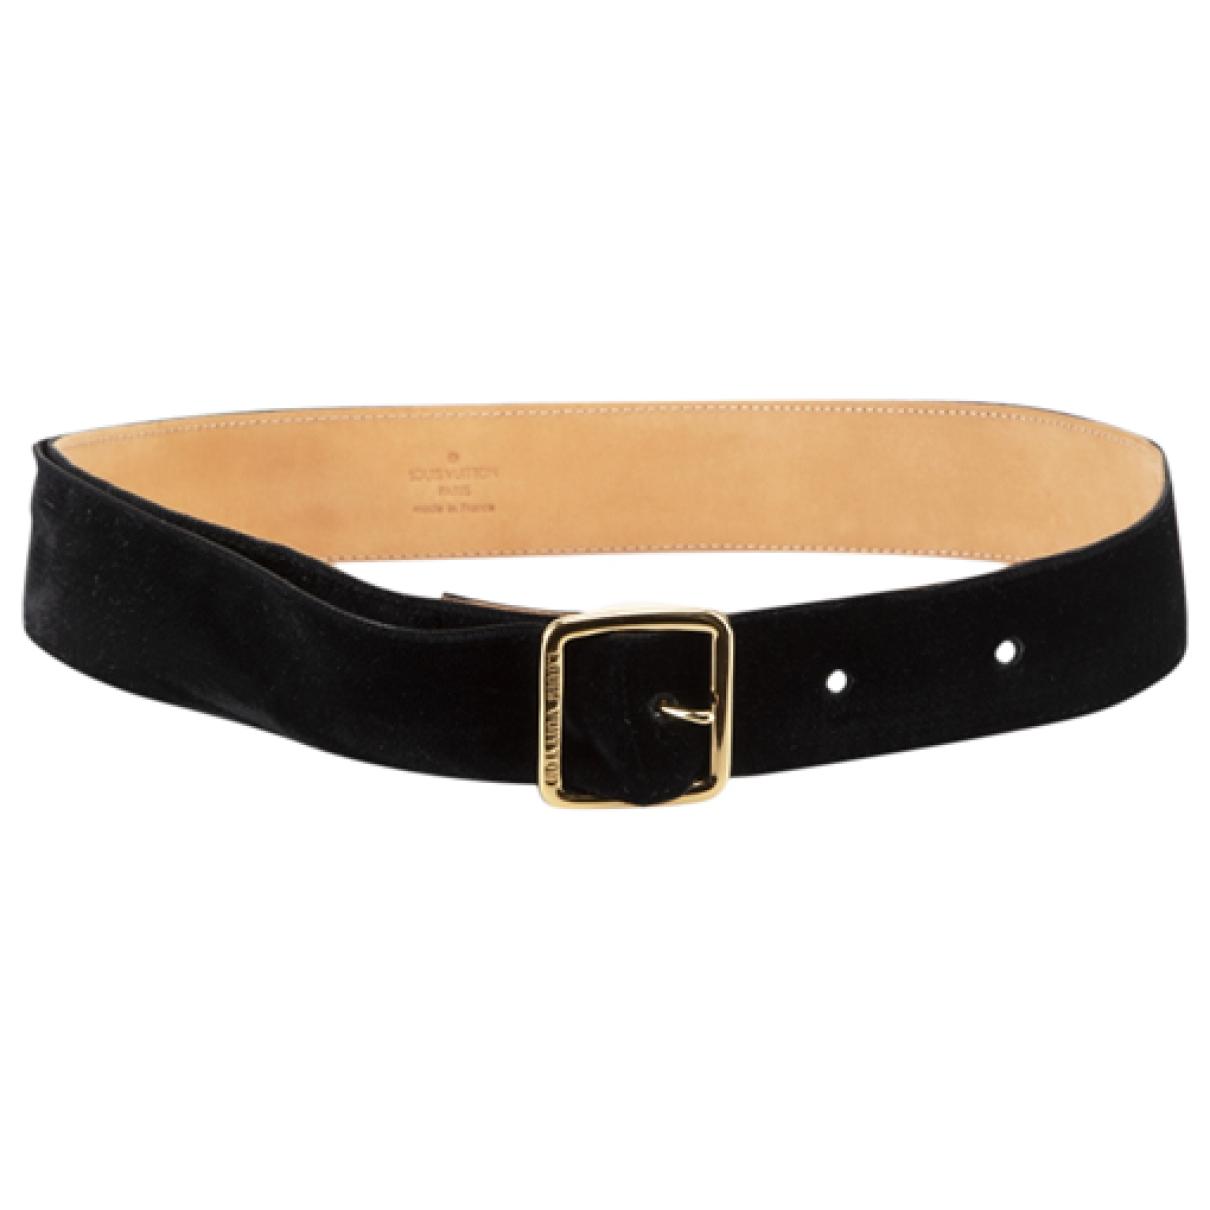 Women leather belt LV + belt for Women + belt LV + belt LV + leather belt  pinko + belts for women luxury + luxury belts + lv belts + luxe belts -  AliExpress